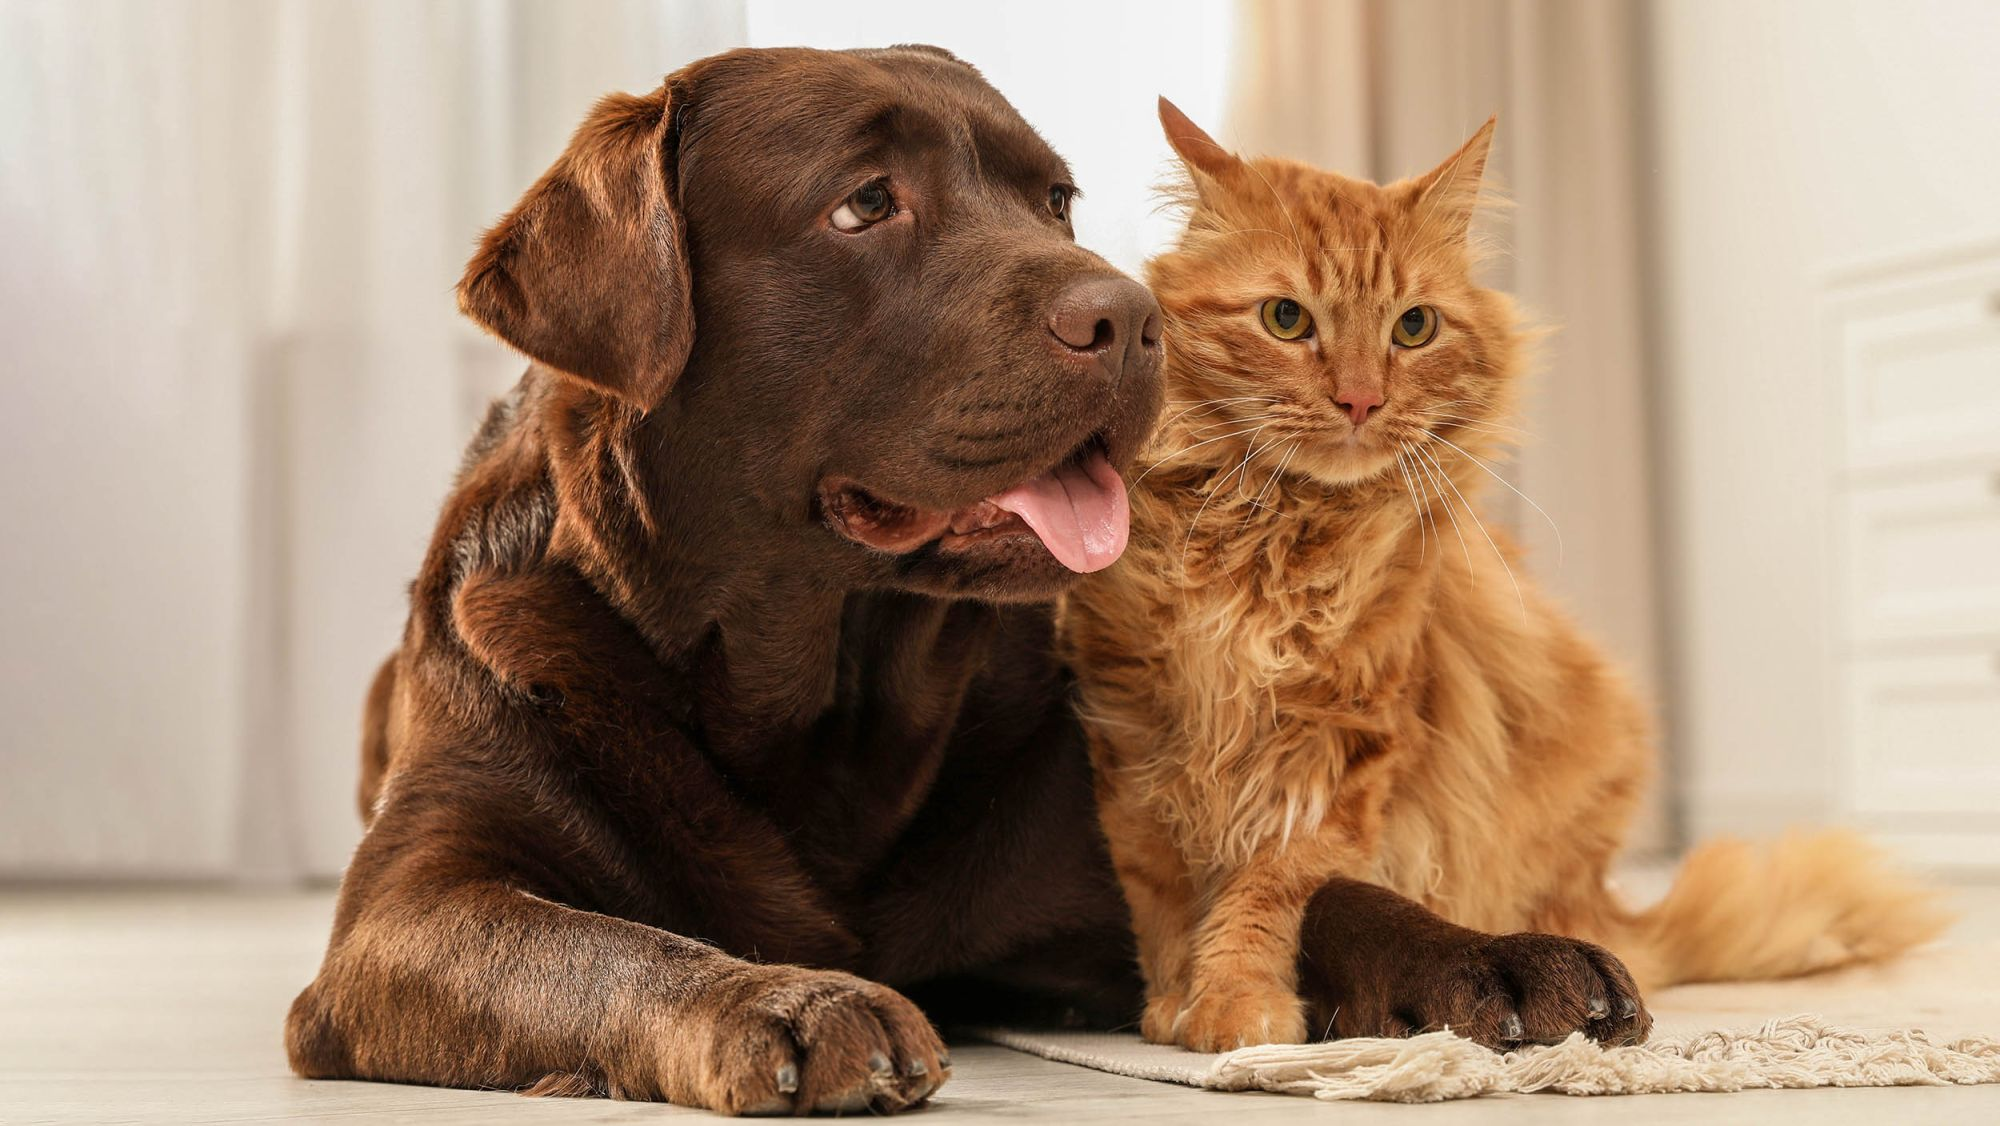 Ein ausgewachsener brauner Labrador Retriever und eine rote Katze liegen in einem Innenraum auf einem weißen Teppich